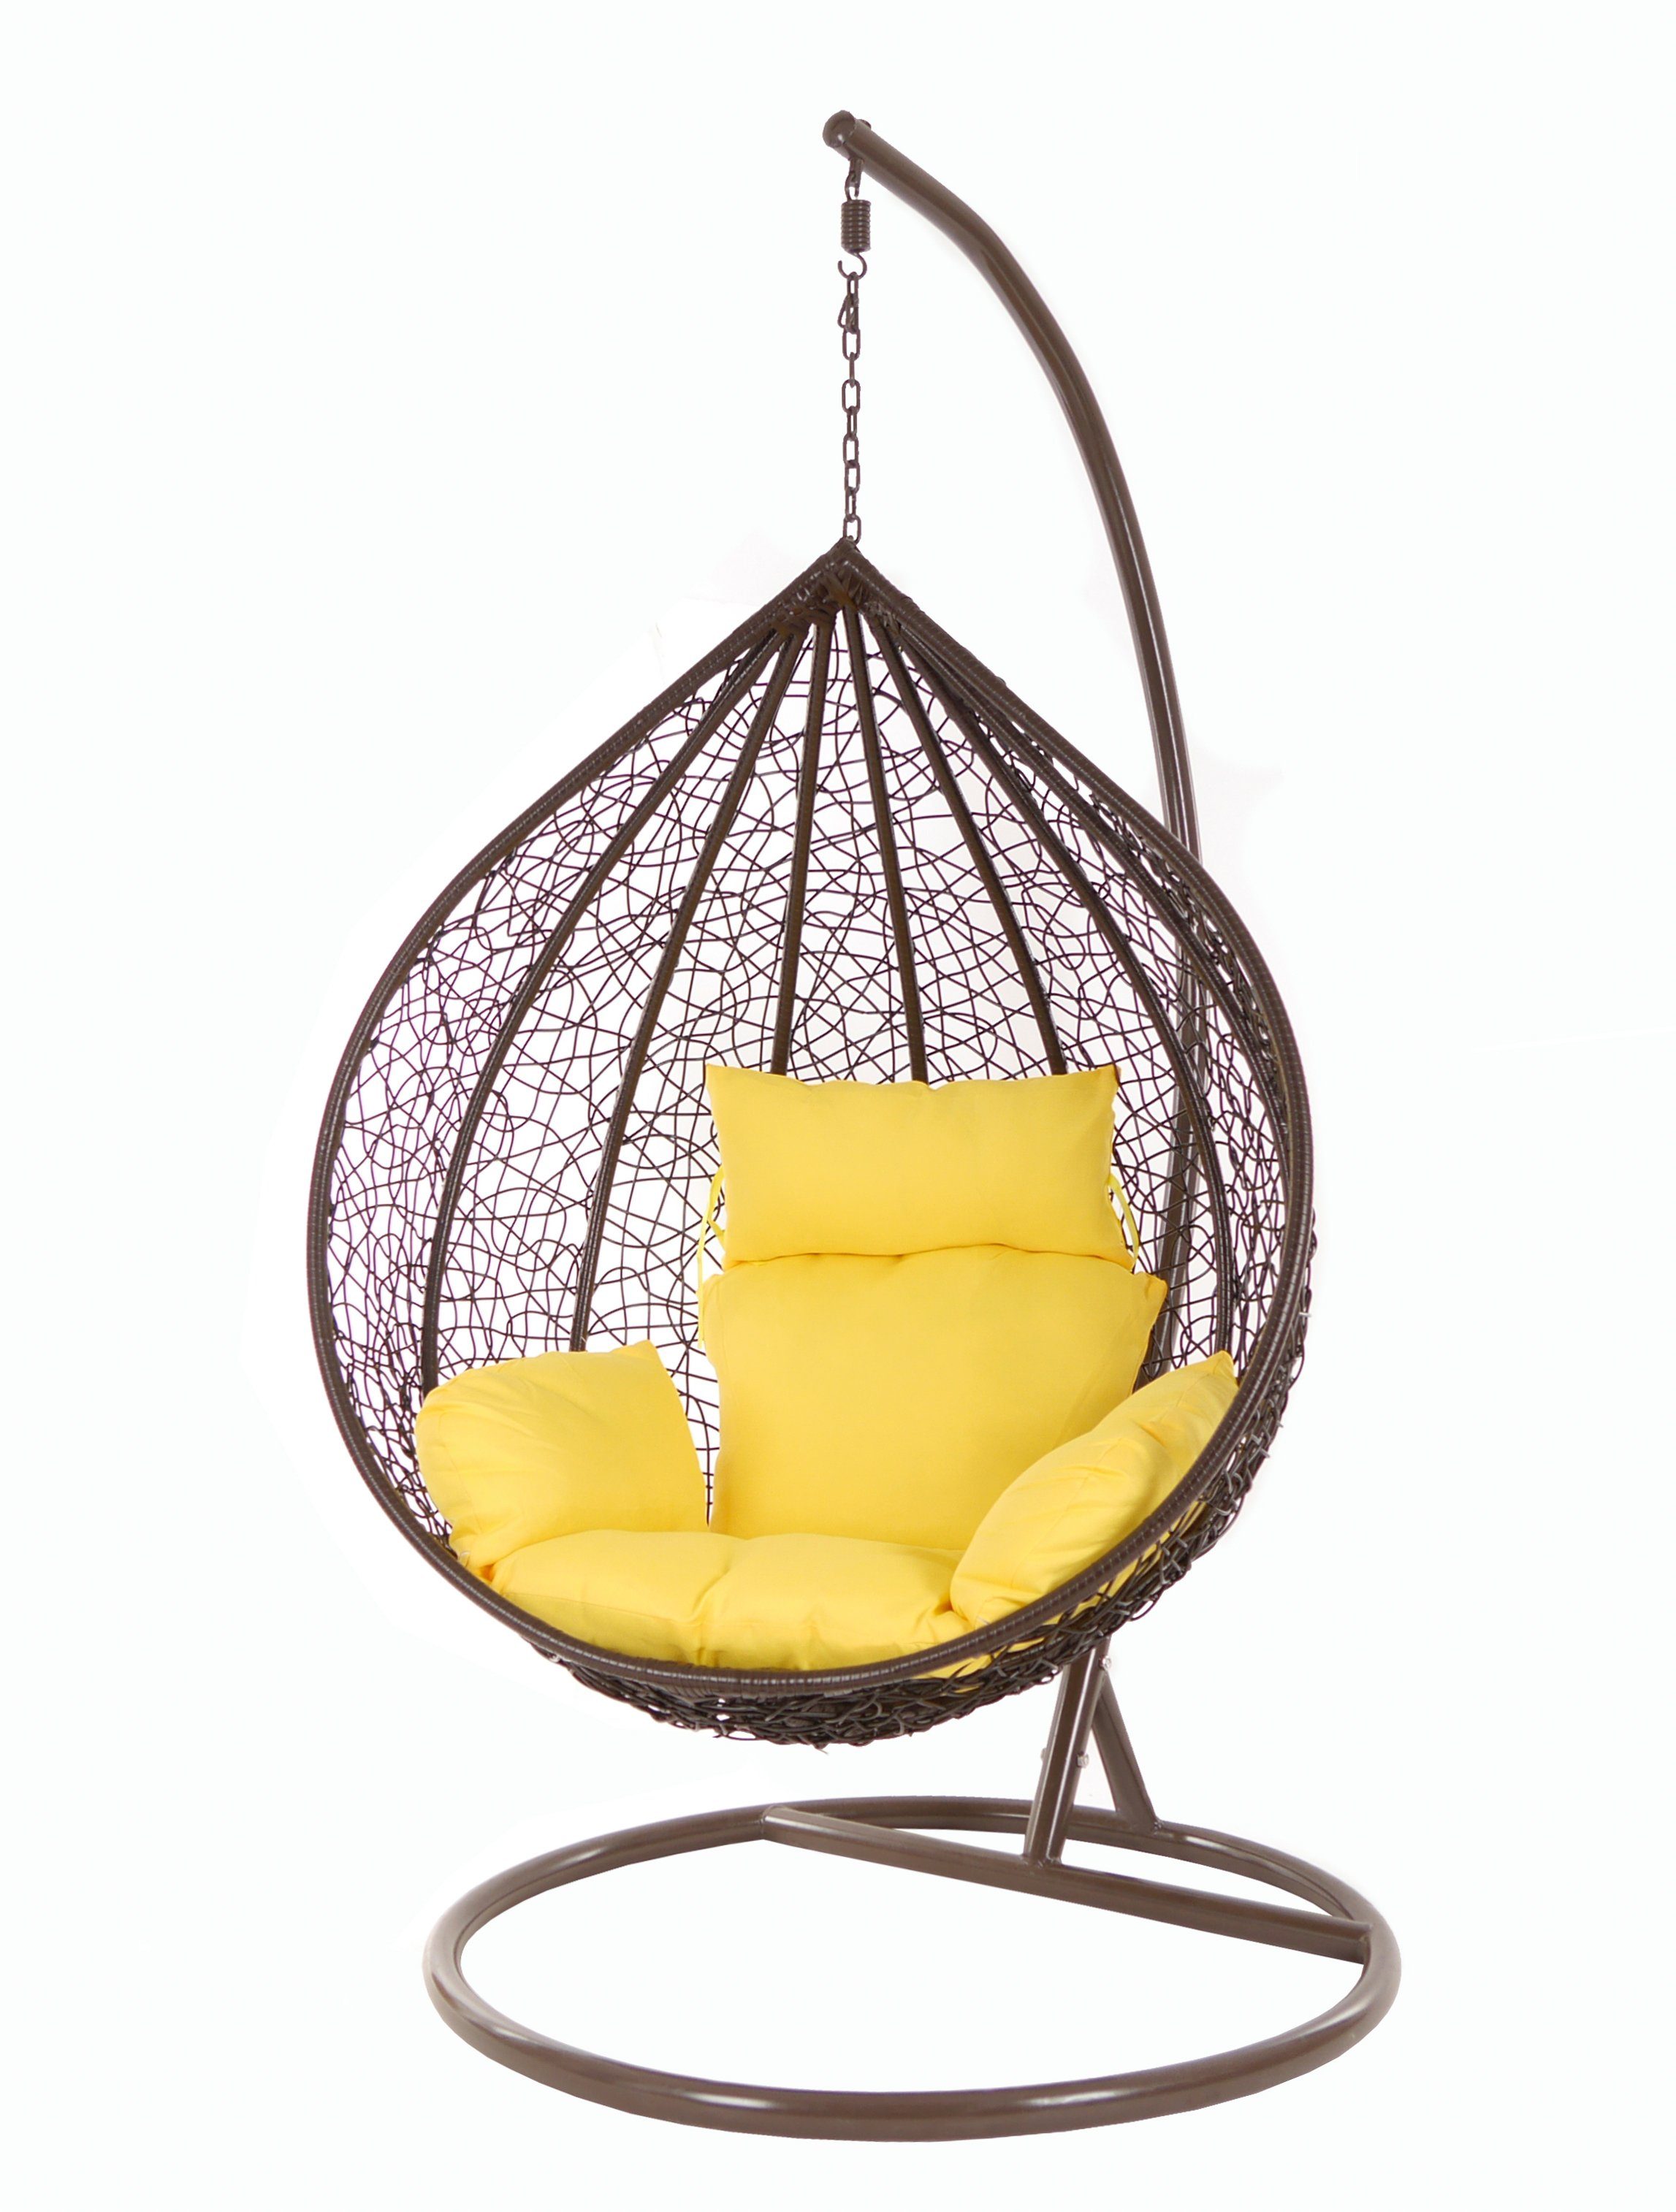 und Swing Schwebesessel, pineapple) gelb Kissen Chair, MANACOR Hängesessel Hängesessel darkbrown, Hängesessel mit Gestell (2200 braun, KIDEO